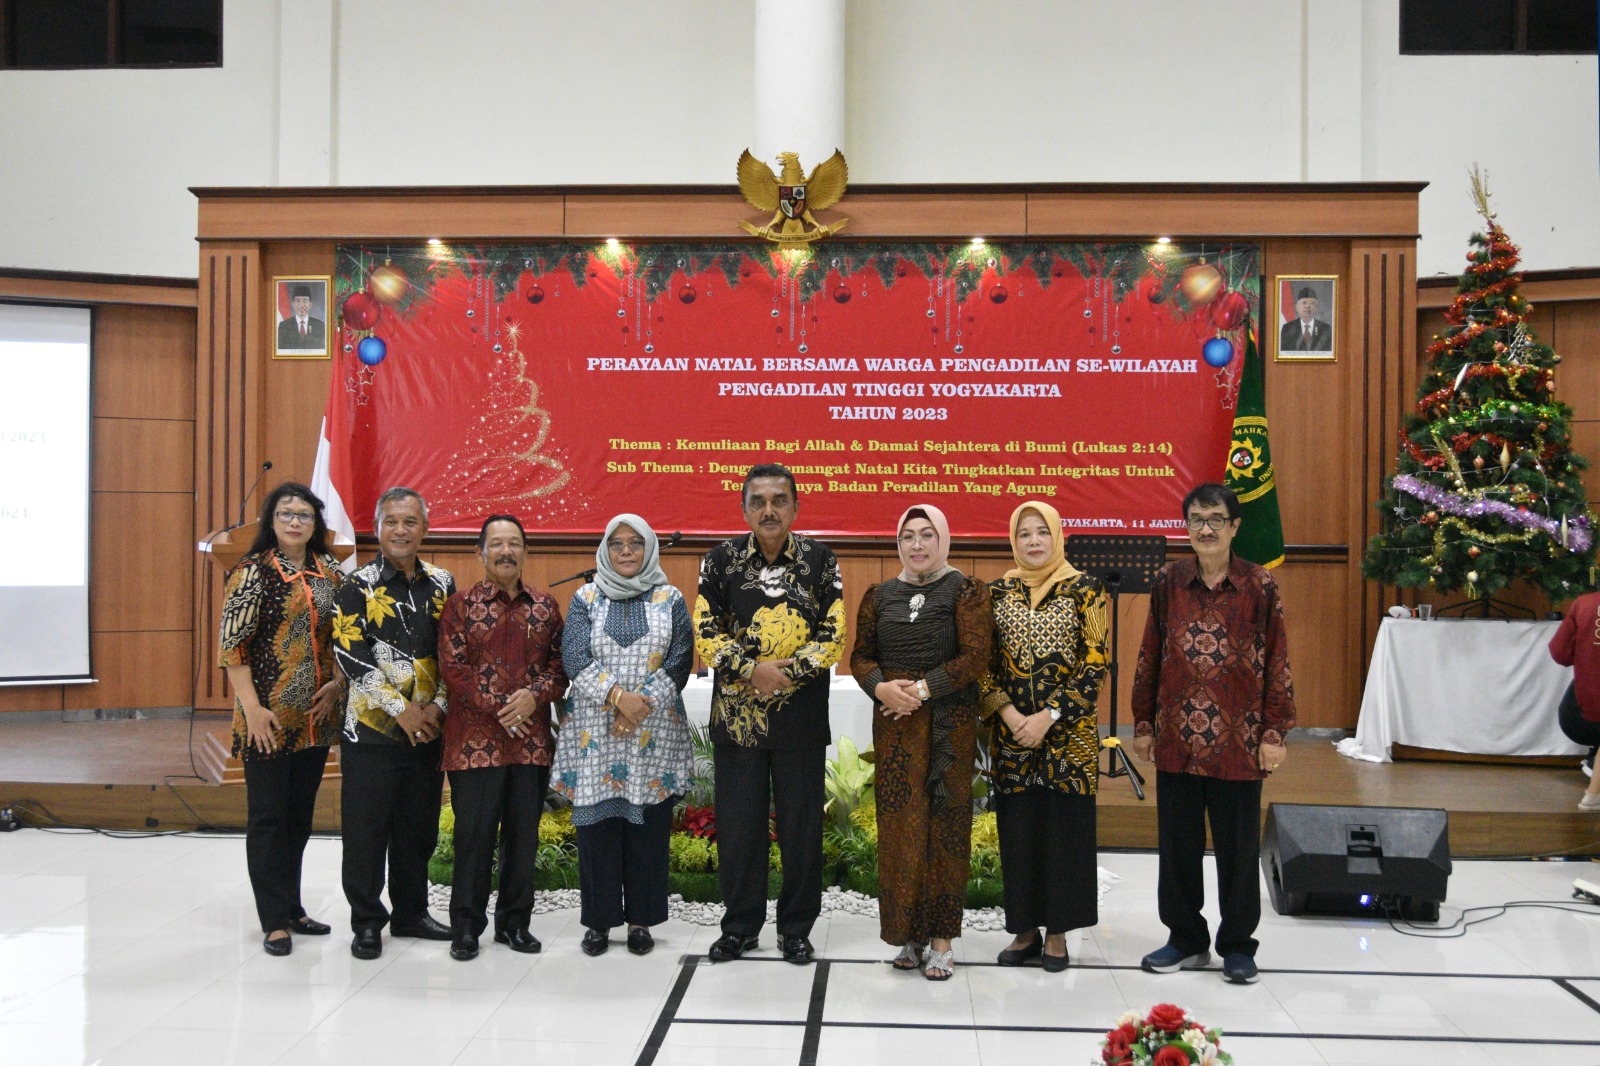 Perayaan Natal bersama Warga Pengadilan se-Wilayah Pengadilan Tinggi Yogyakarta Tahun 2023